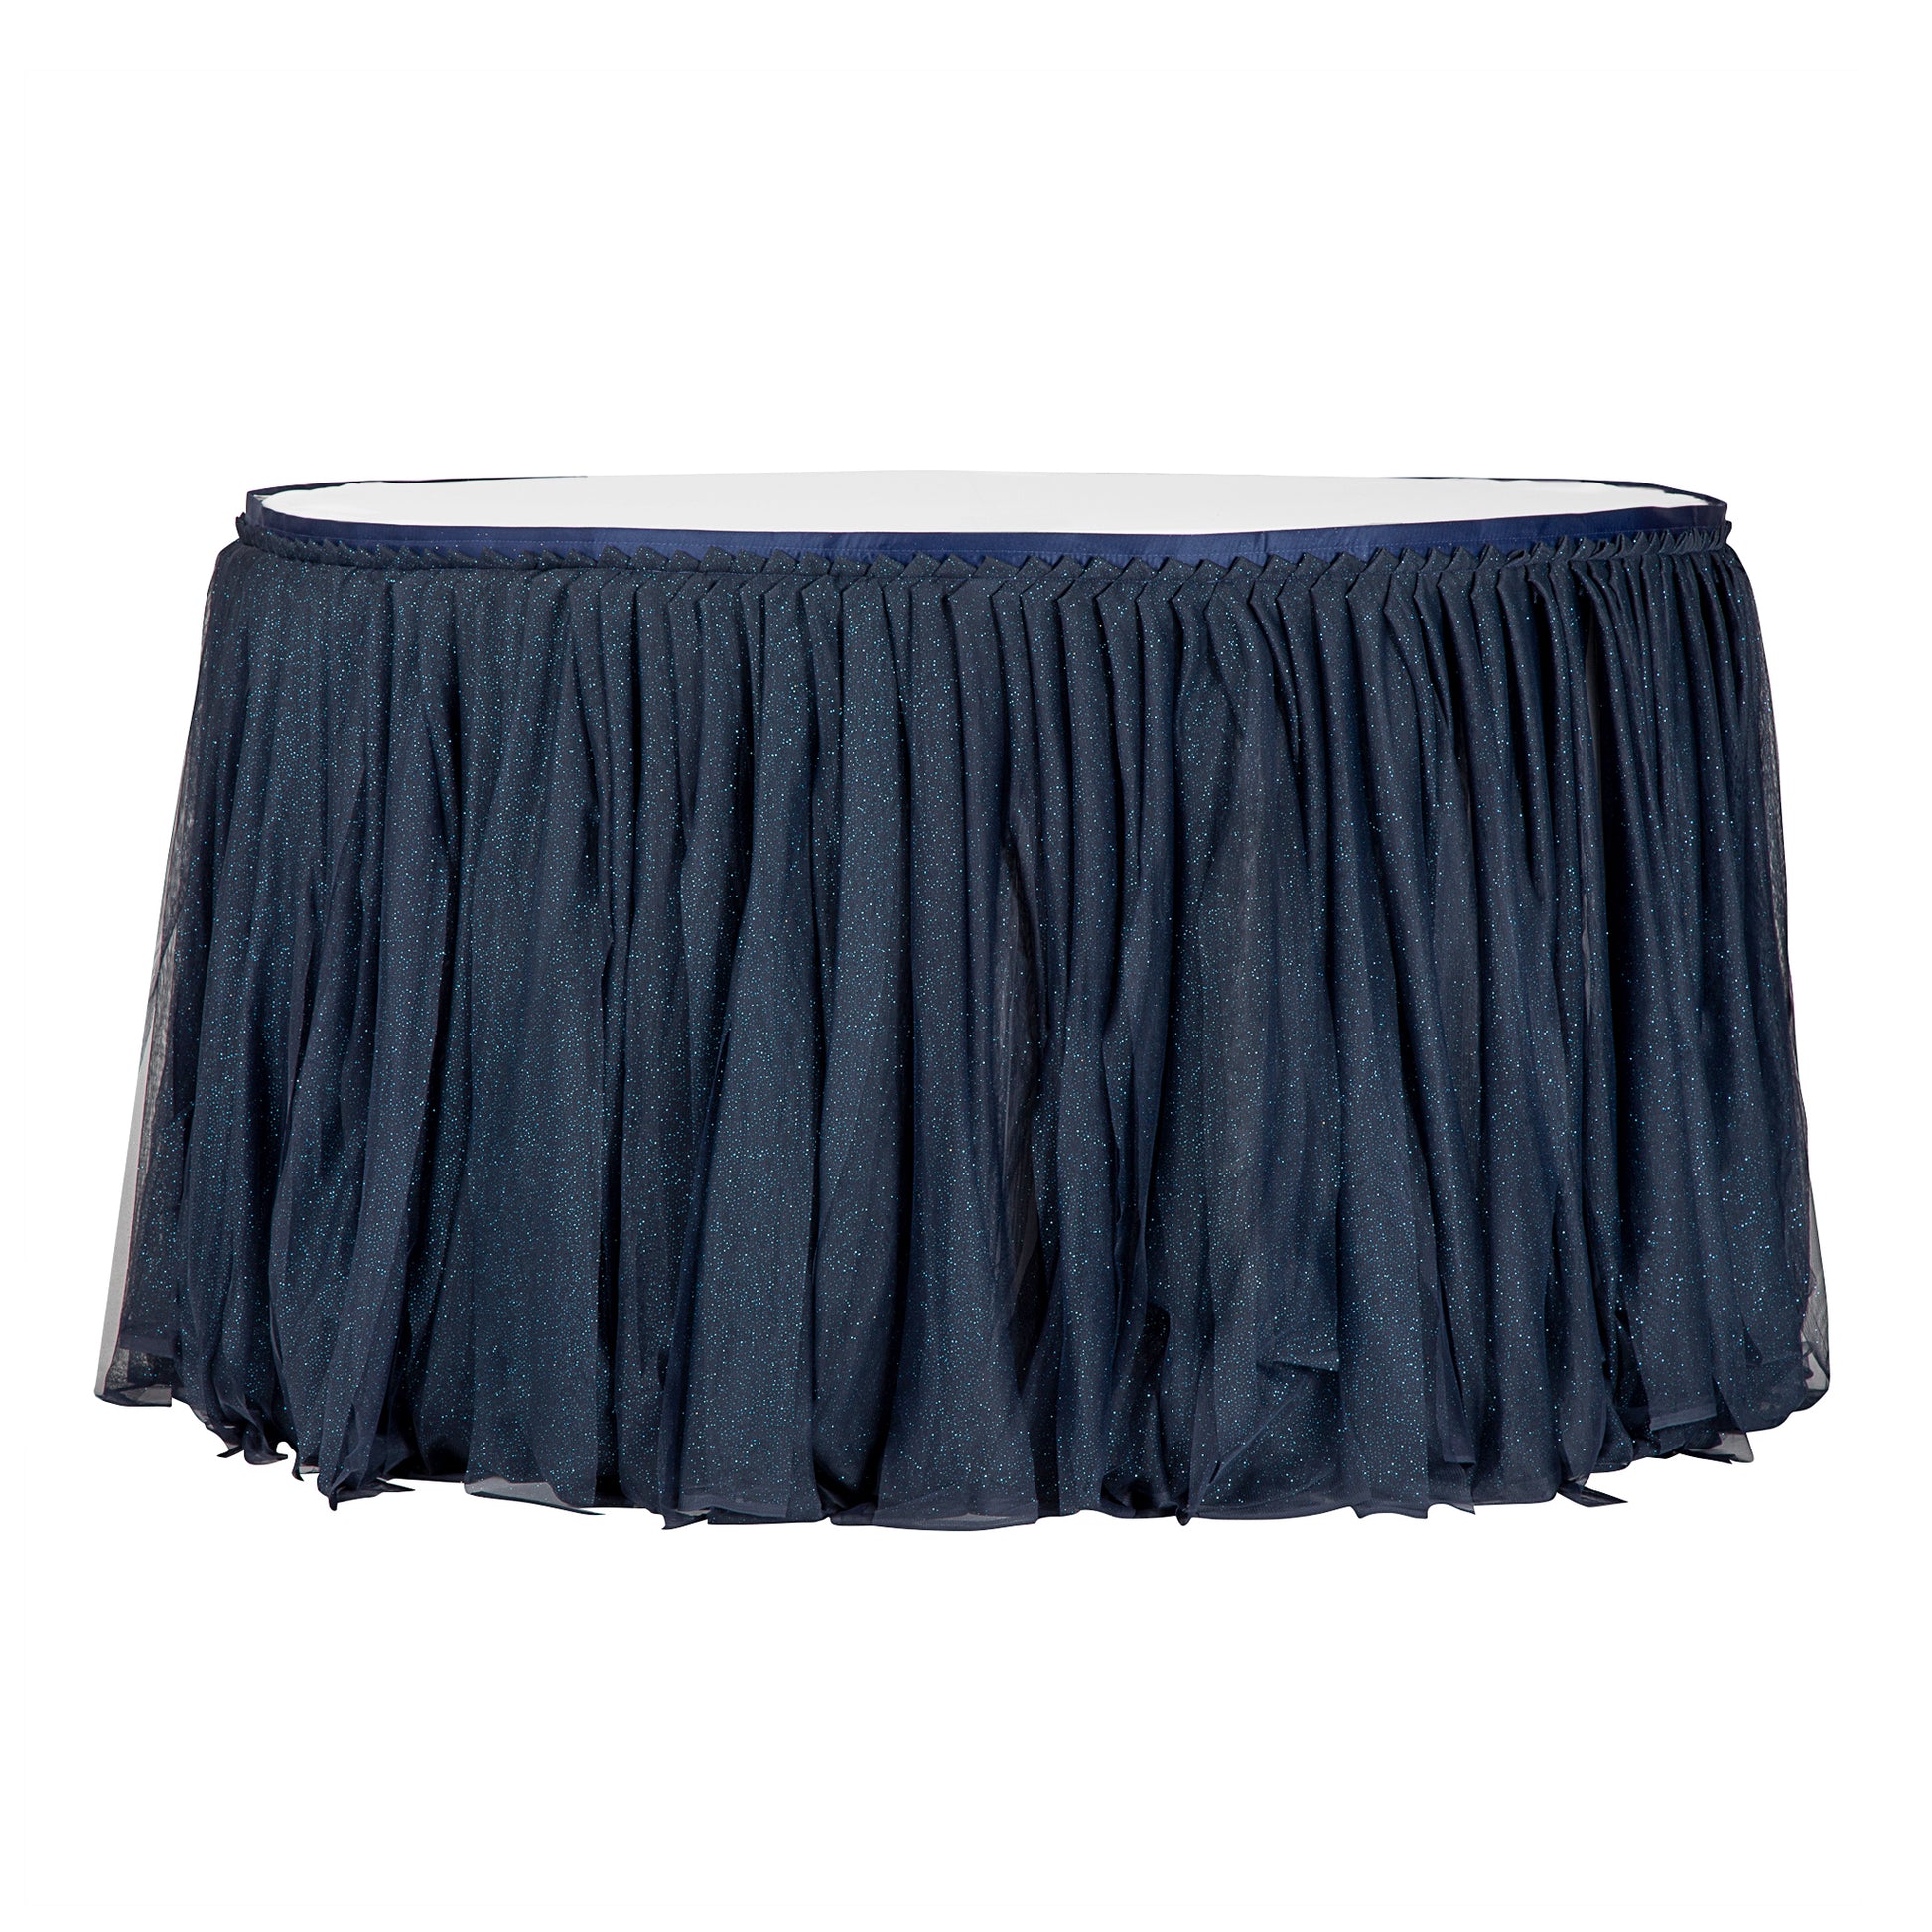 Glitter Tulle Tutu 14ft Table Skirt - Navy Blue - CV Linens